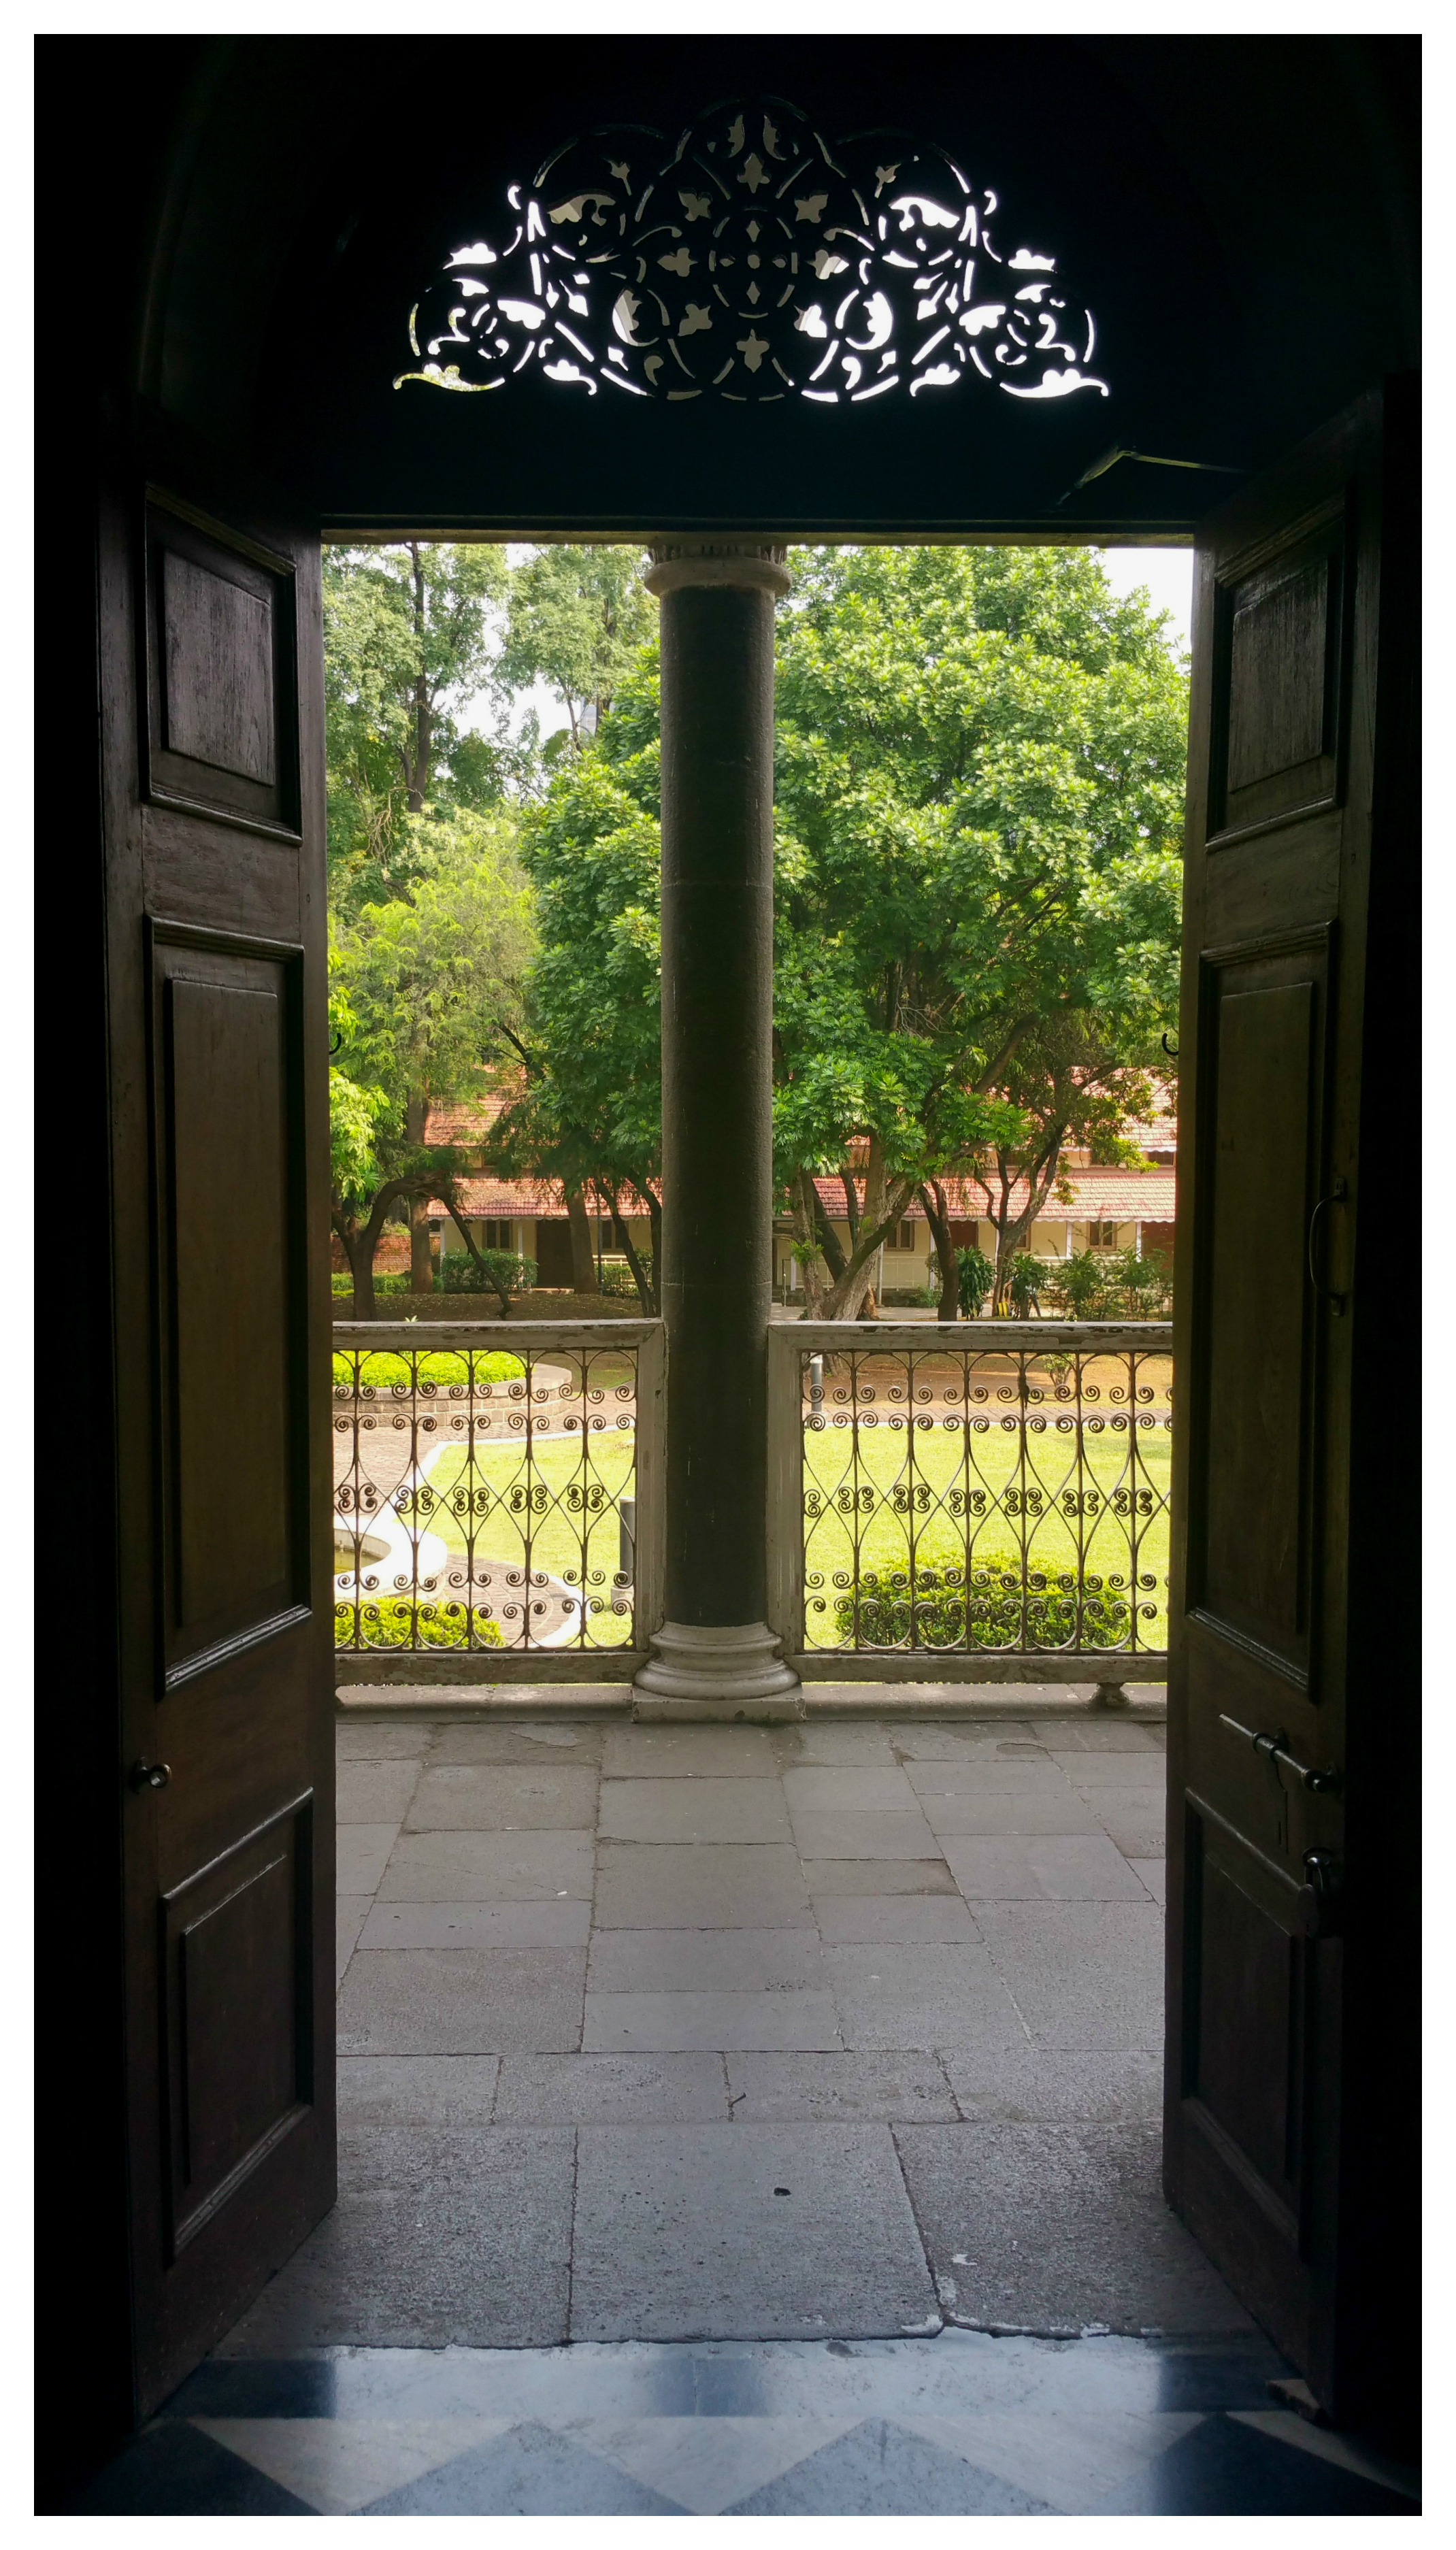 Pune India aga kahn palace 1.jpg